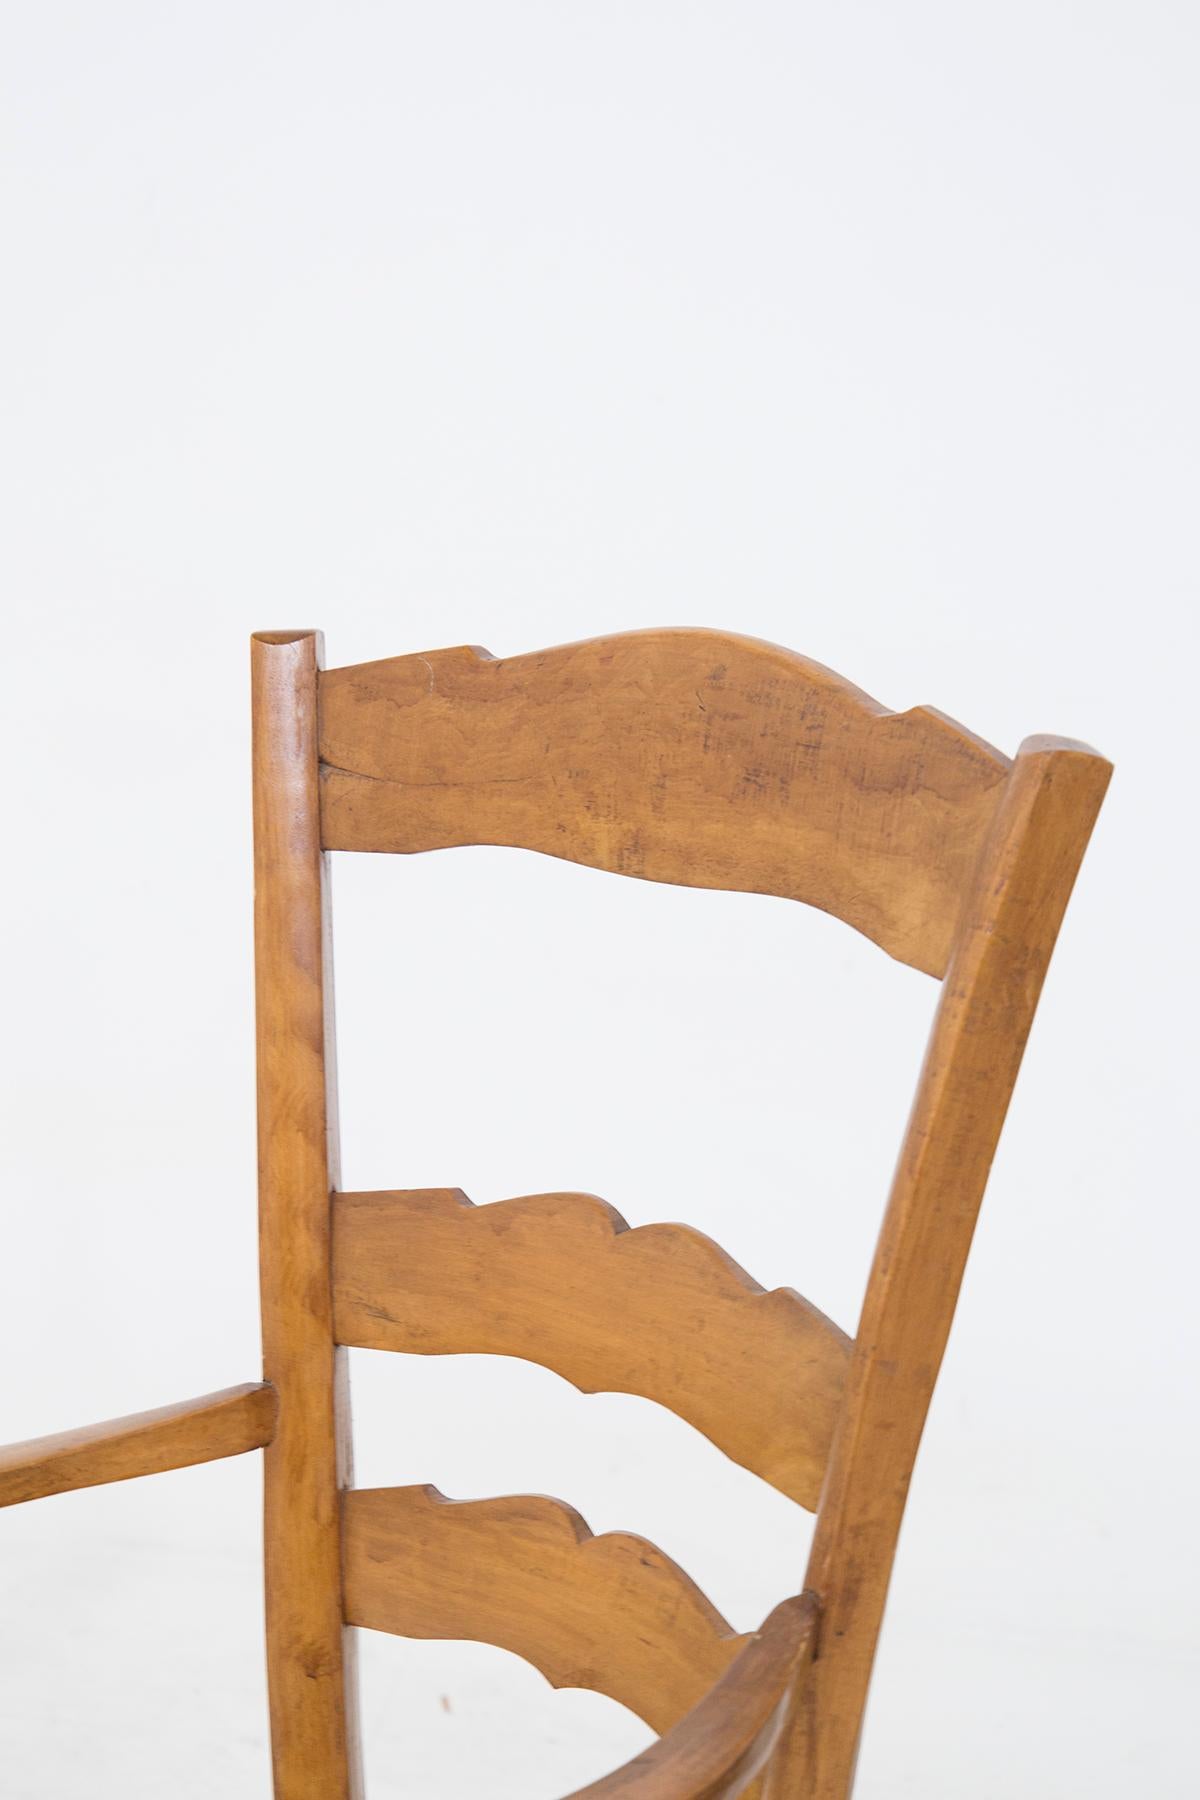 Schönes Paar Kopfstühle mit Armlehnen, die dem großen Designer Paolo Buffa aus den 1940er Jahren zugeschrieben werden.
Das Gestell ist vollständig aus massivem und haltbarem hellem Holz gefertigt. Es gibt 4 Beine, die gewundene und quadratische